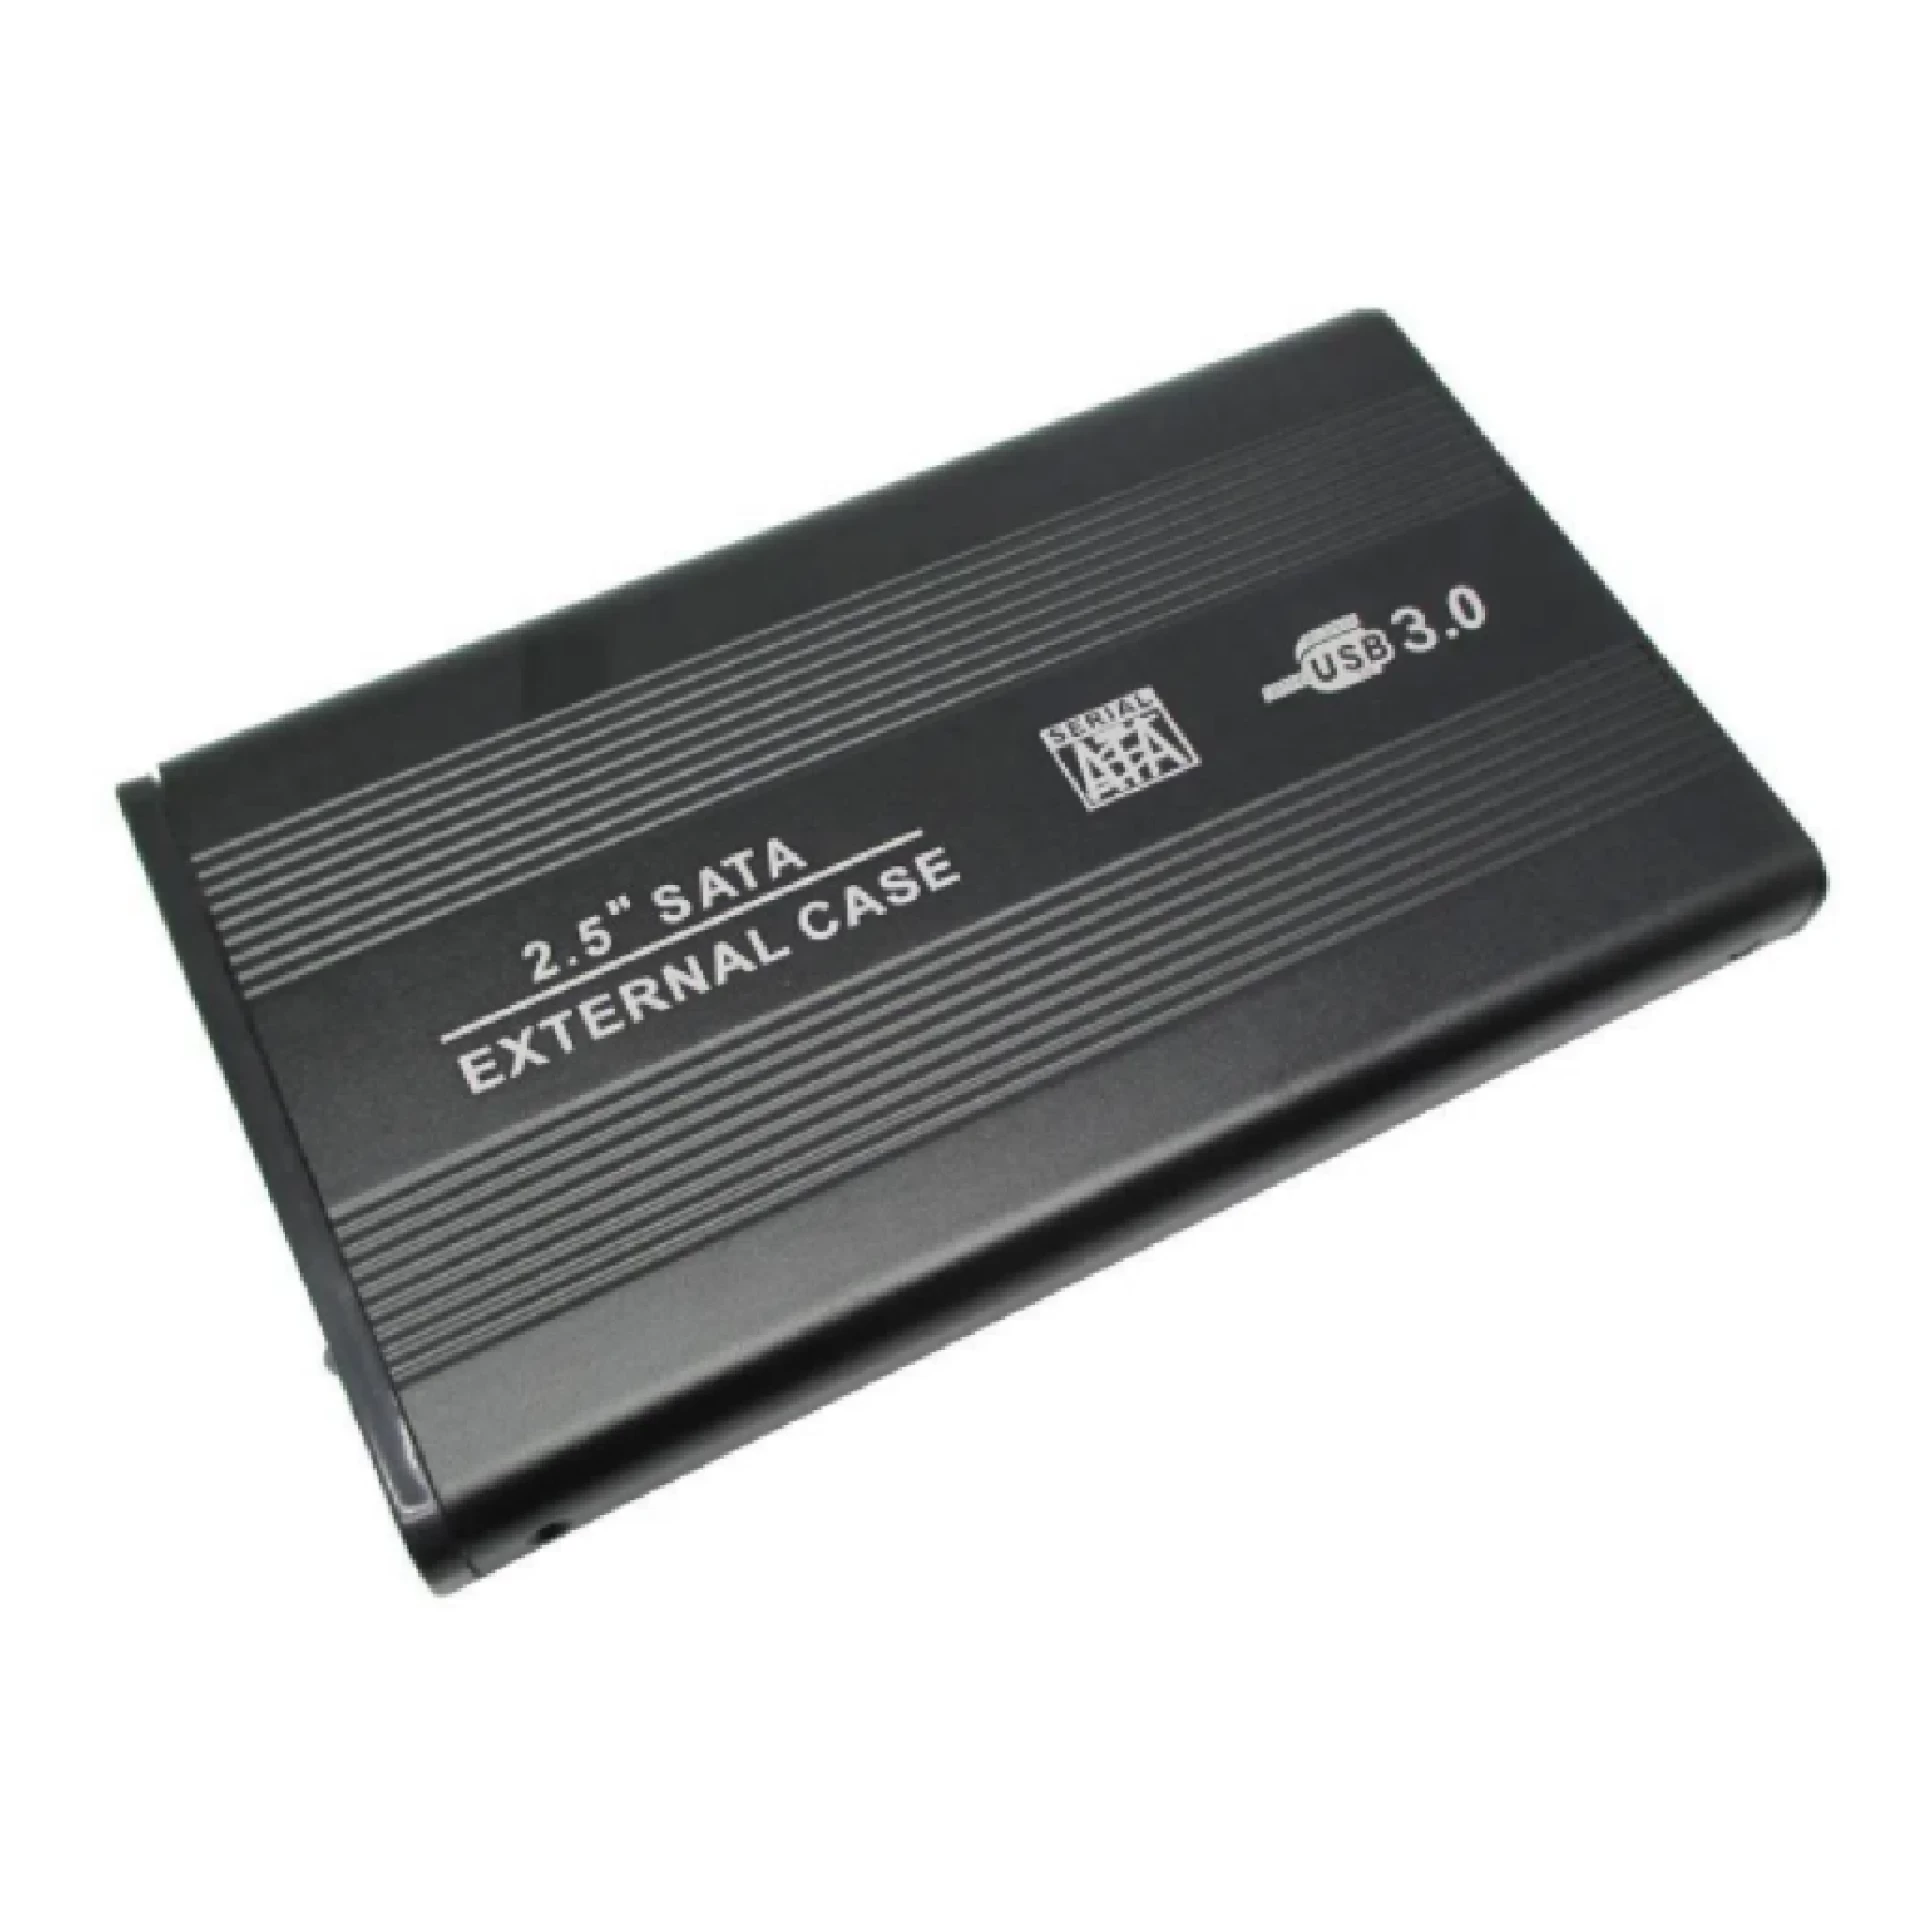 EdBerk74 Estuche HDD USB de 2,5 Pulgadas Sata a Disco Duro USB 2.0 Disco SATA Caja Externa para Disco Duro HDD con Cable USB